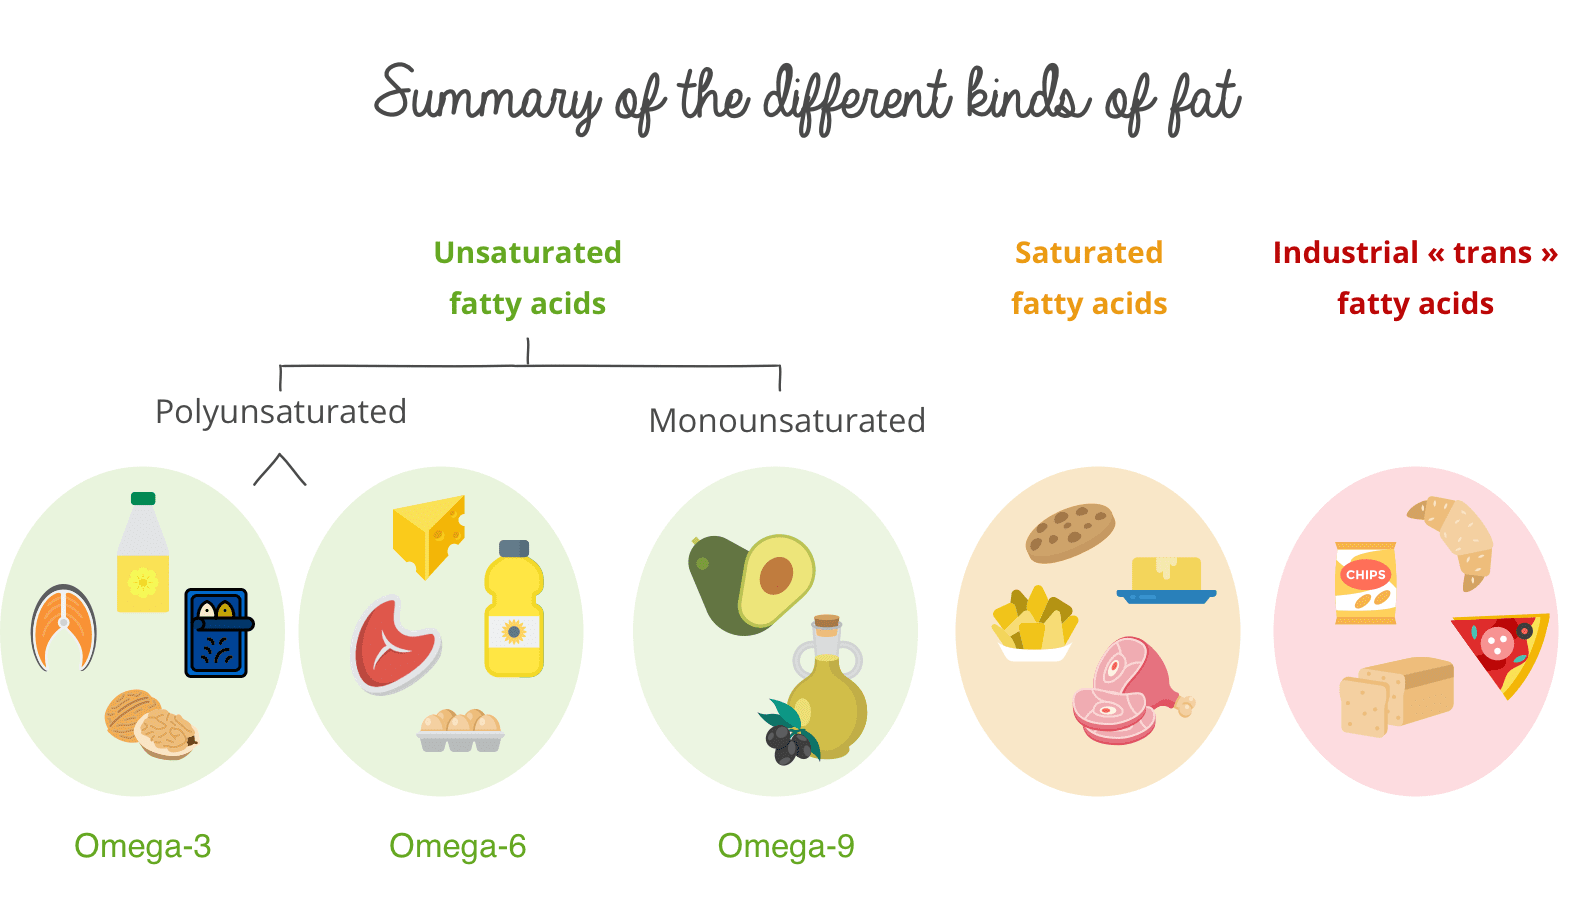 trans fat vs saturated fat